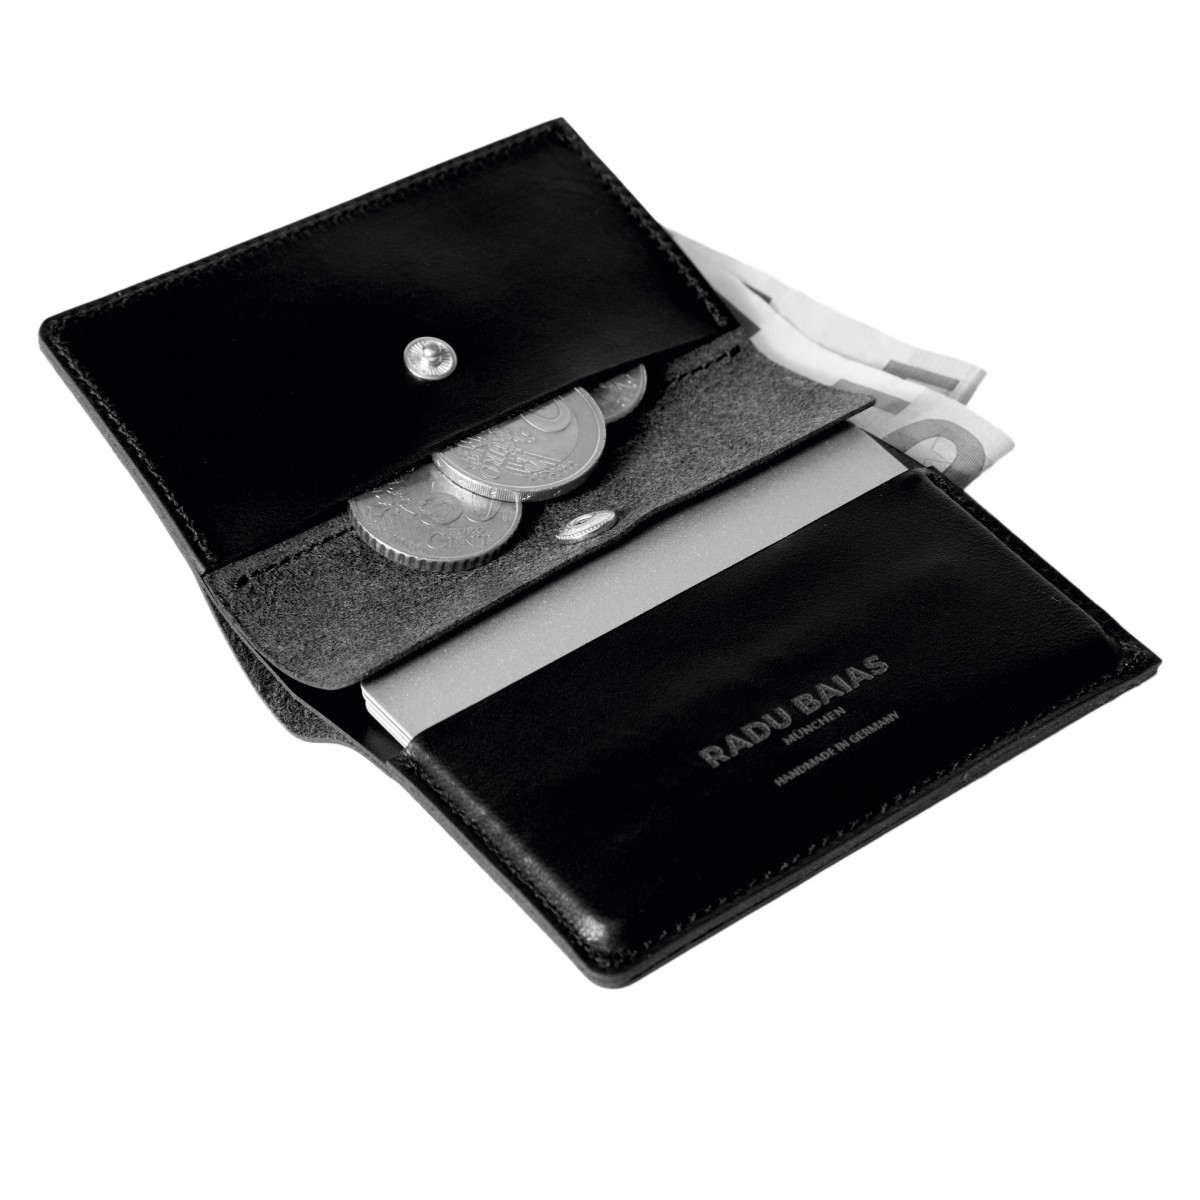 Mini Portemonnaie in schwarz mit Münzfach - aus premium pflanzlich gegerbtem Leder 